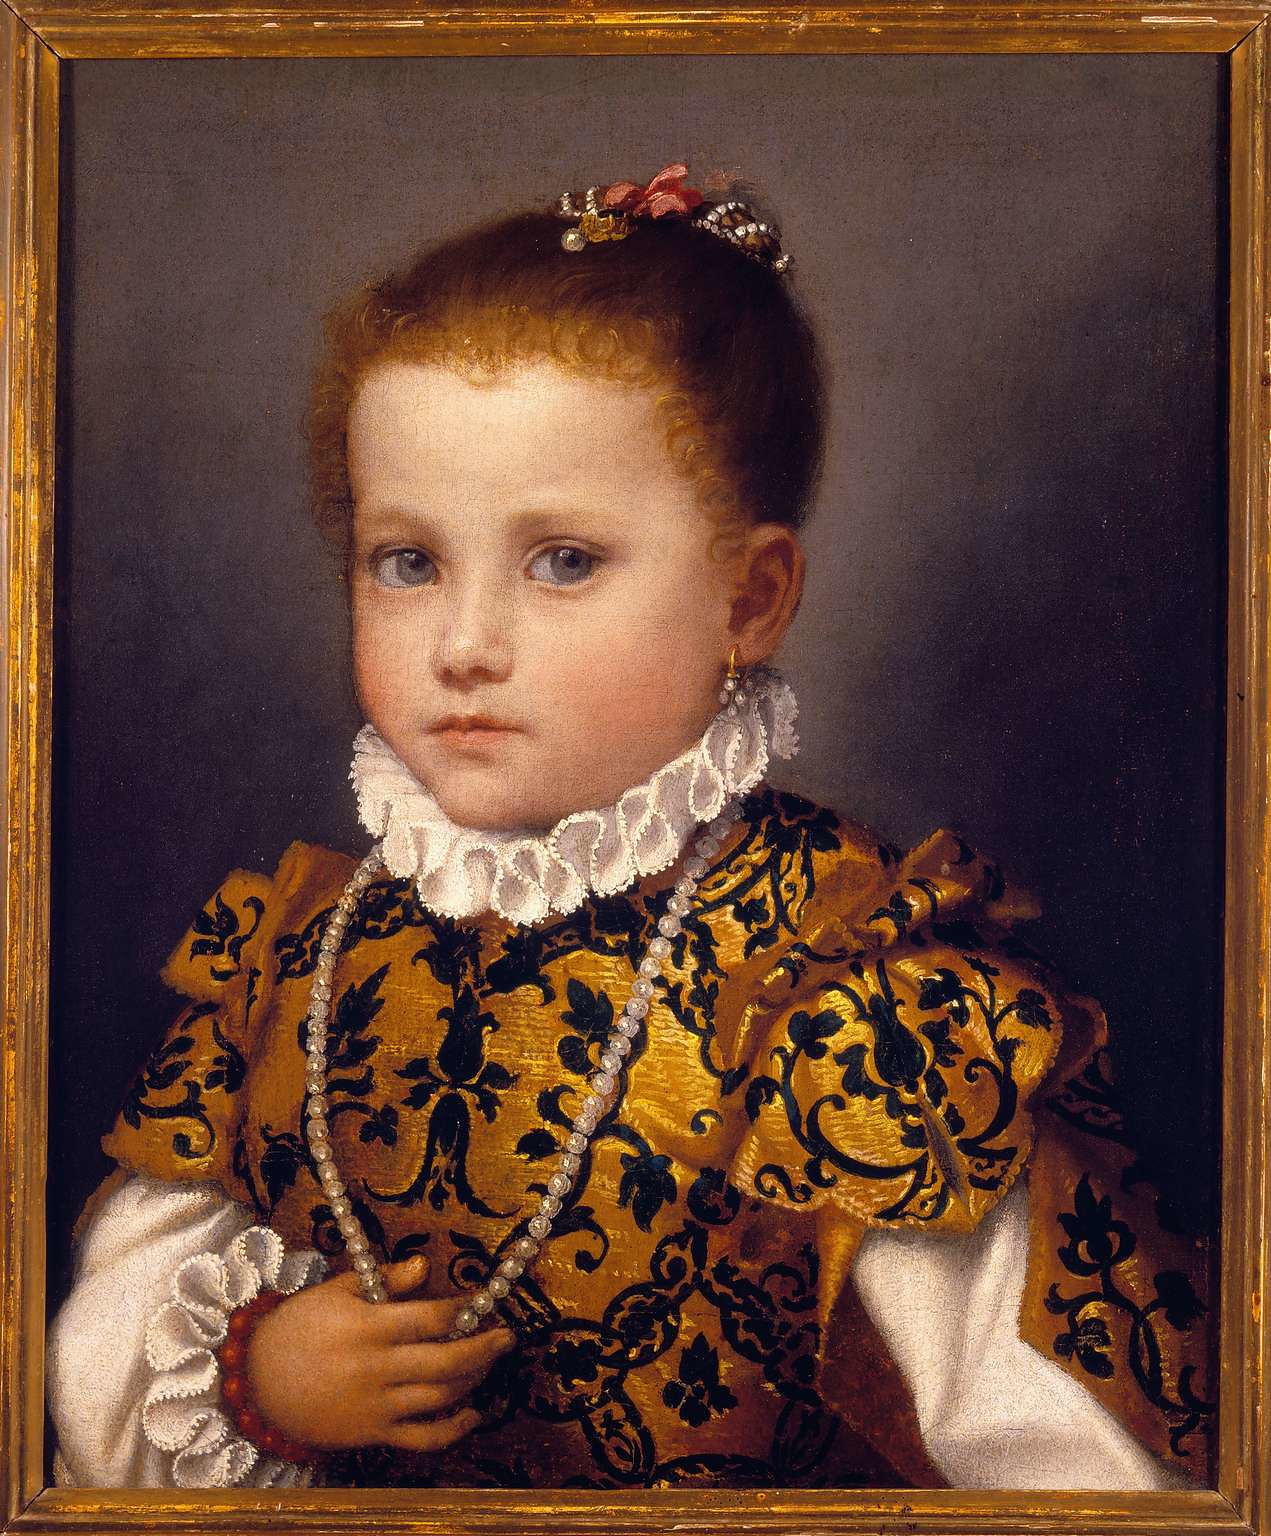 Bergamo, Accademia Carrara. Giovanni Battista Moroni, Portrait of a Little Girl of the Redetti Family, 1570 ca. Courtesy adicorbetta, Milano